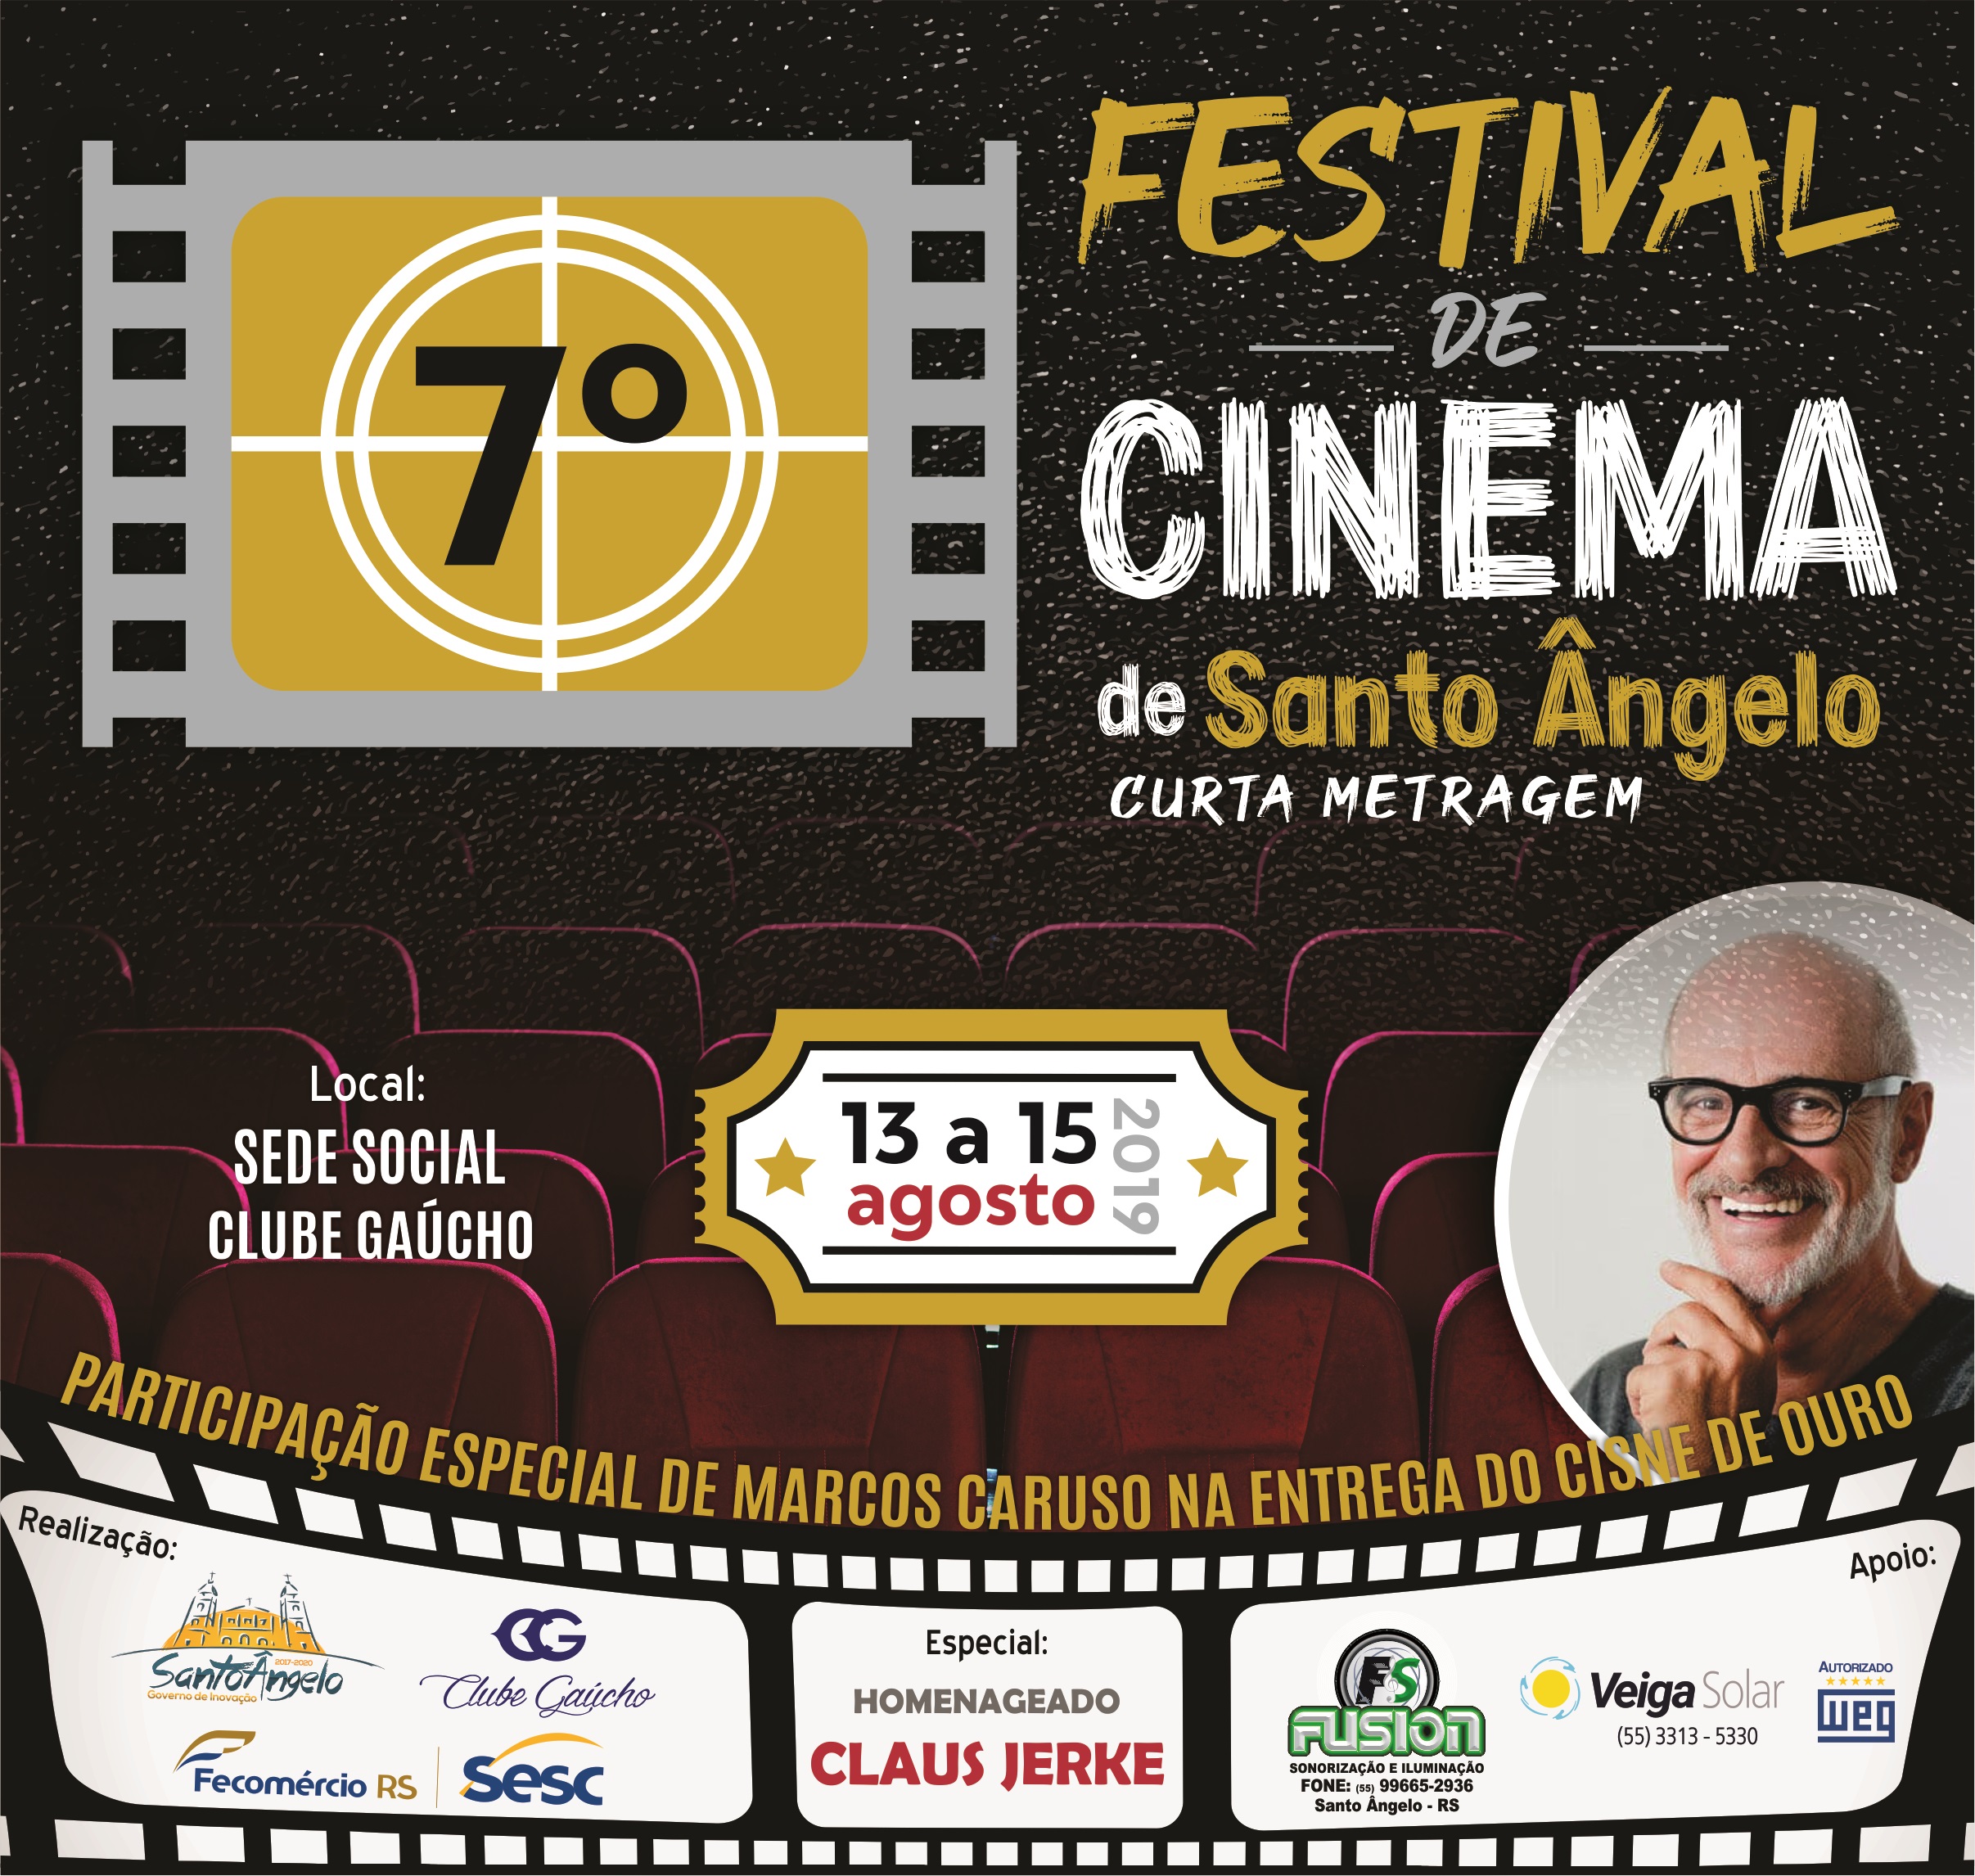 7º Festival de Cinema de Santo Ângelo – Curta Metragem